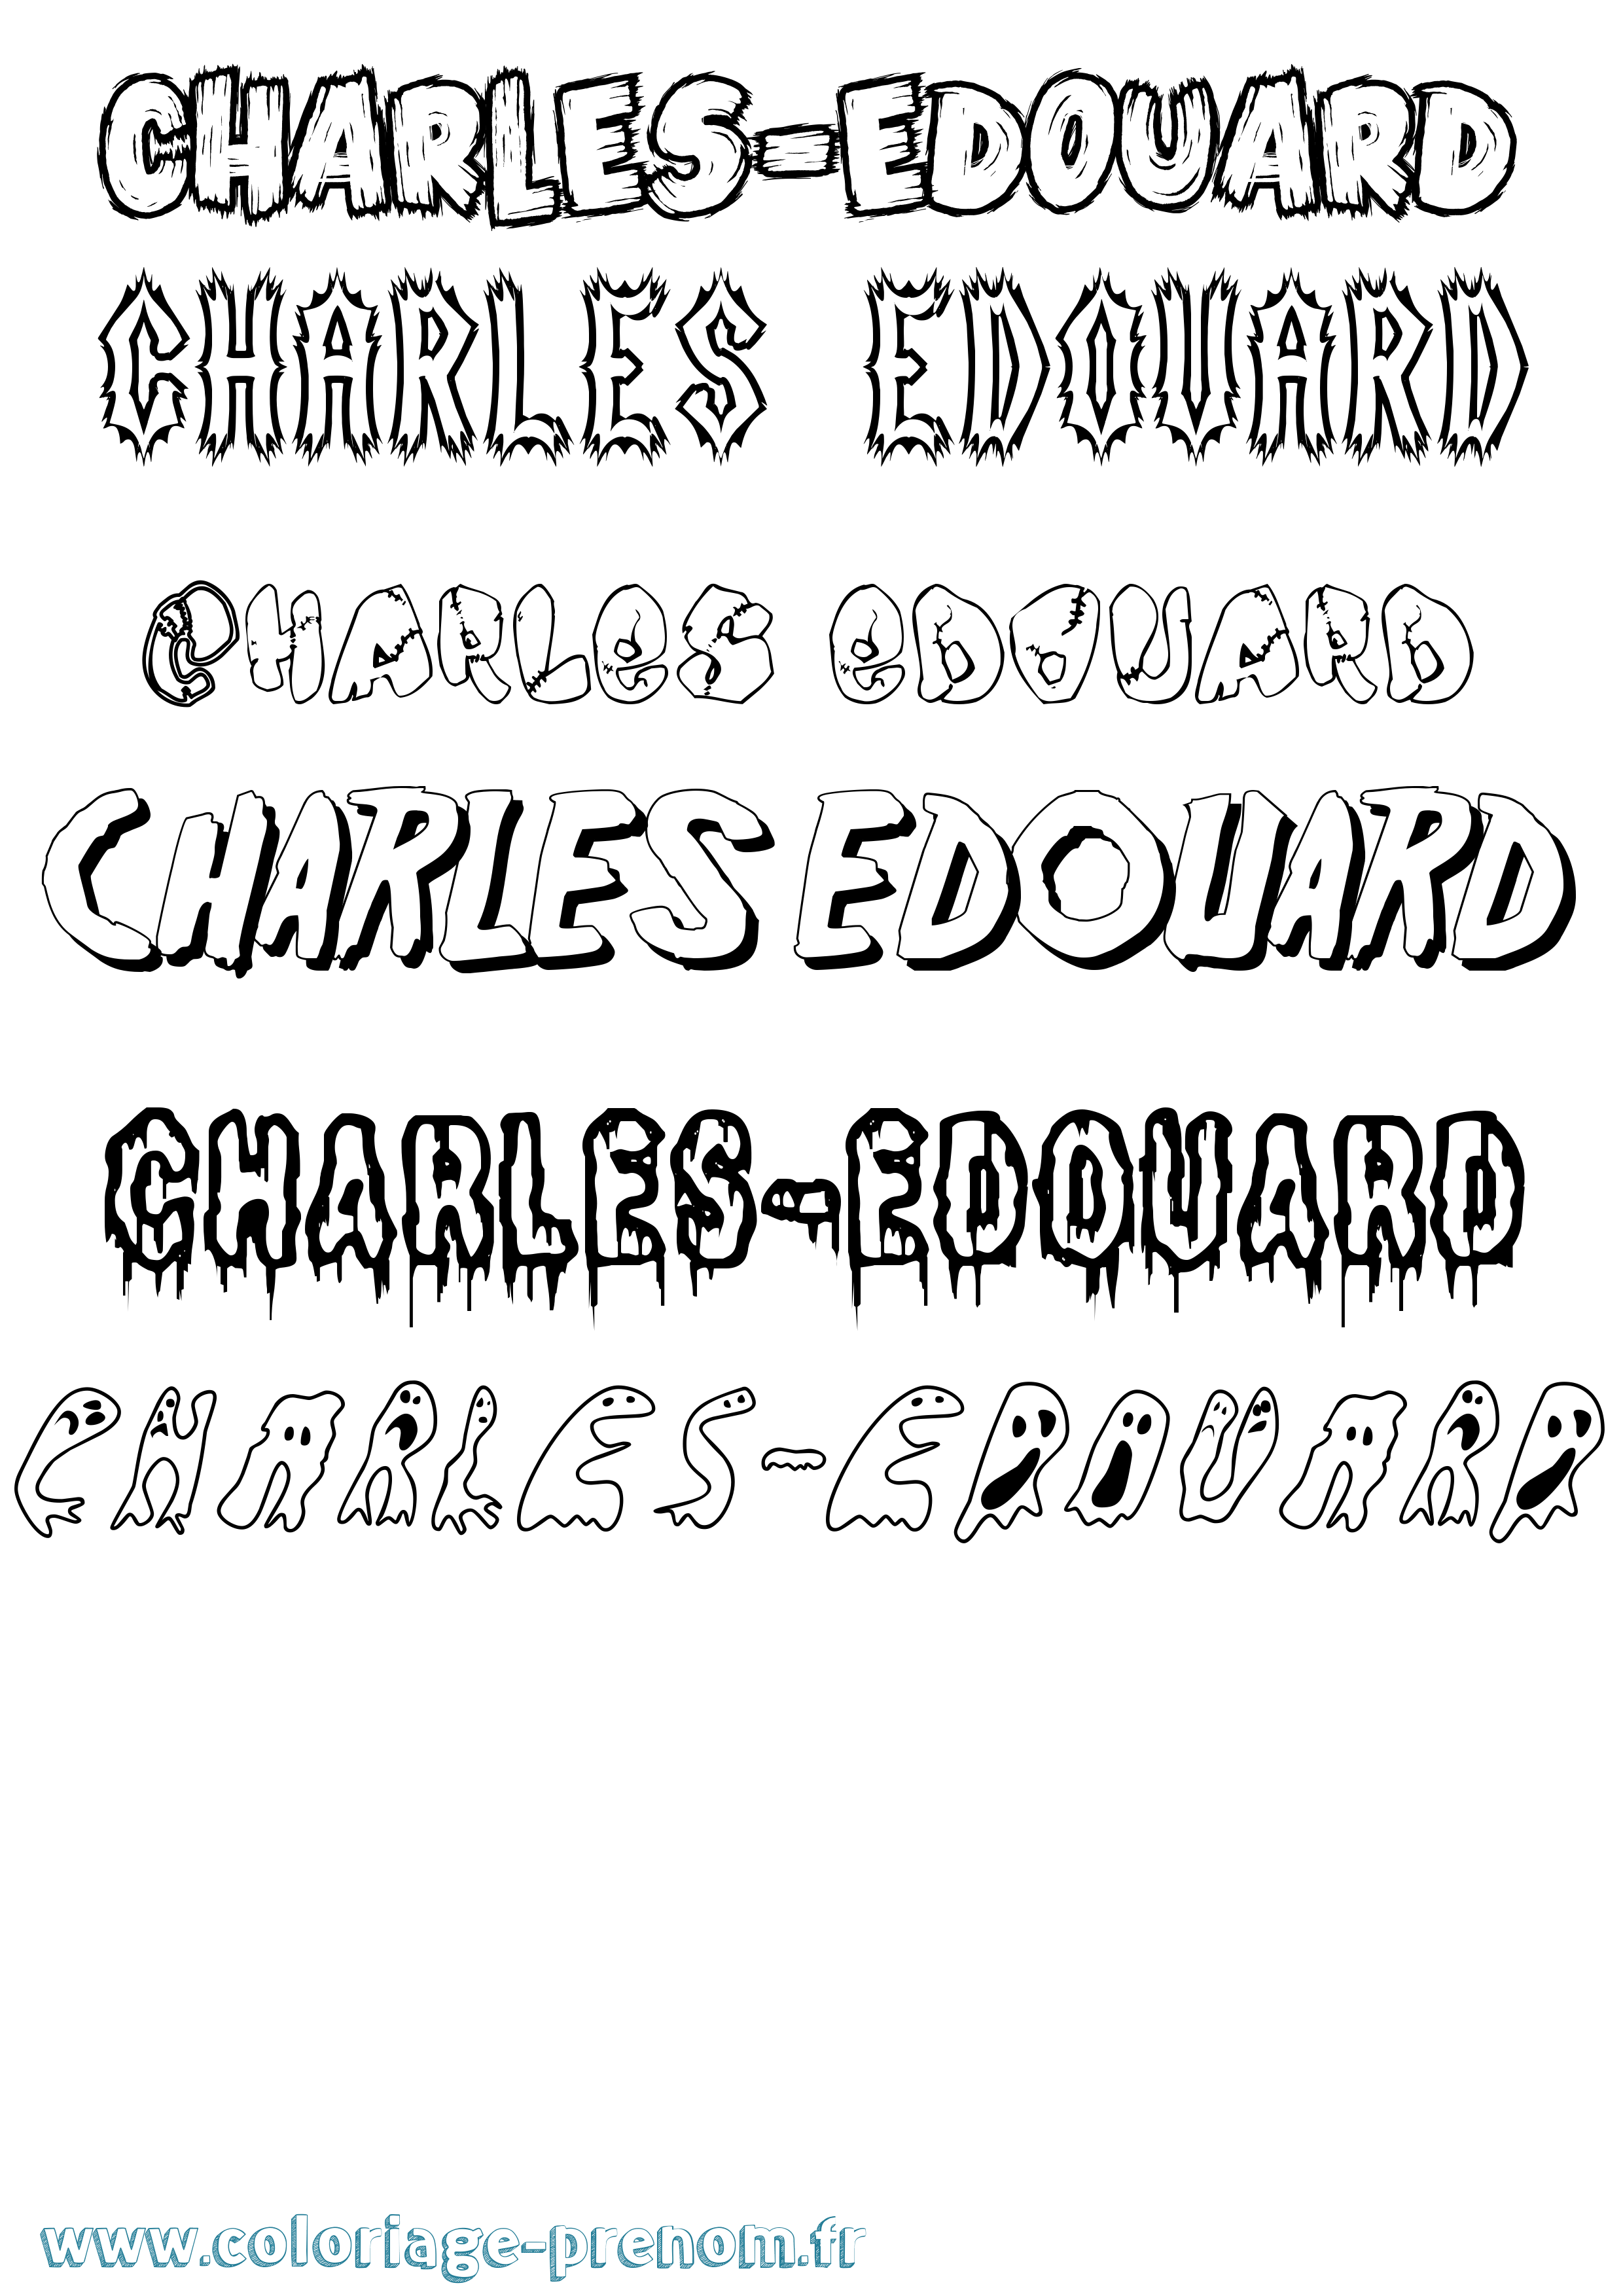 Coloriage prénom Charles-Edouard Frisson